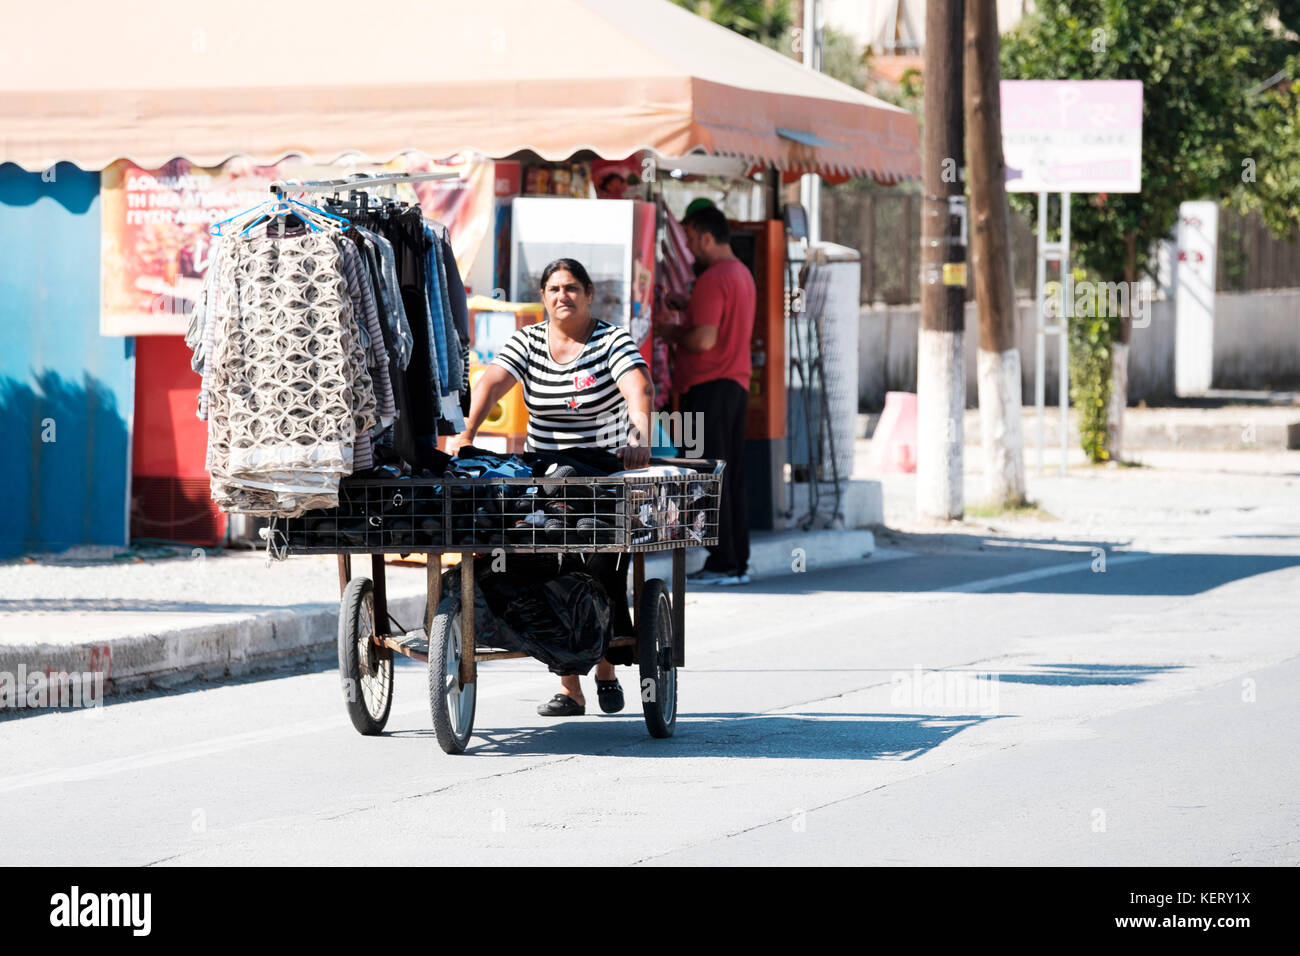 Eine ältere Griechin schiebt einen dreirädrigen Wagen entlang der Hauptstraße. Hte Cart ist mit Kleidungsstücken beladen, die sie zu verkaufen versucht Stockfoto